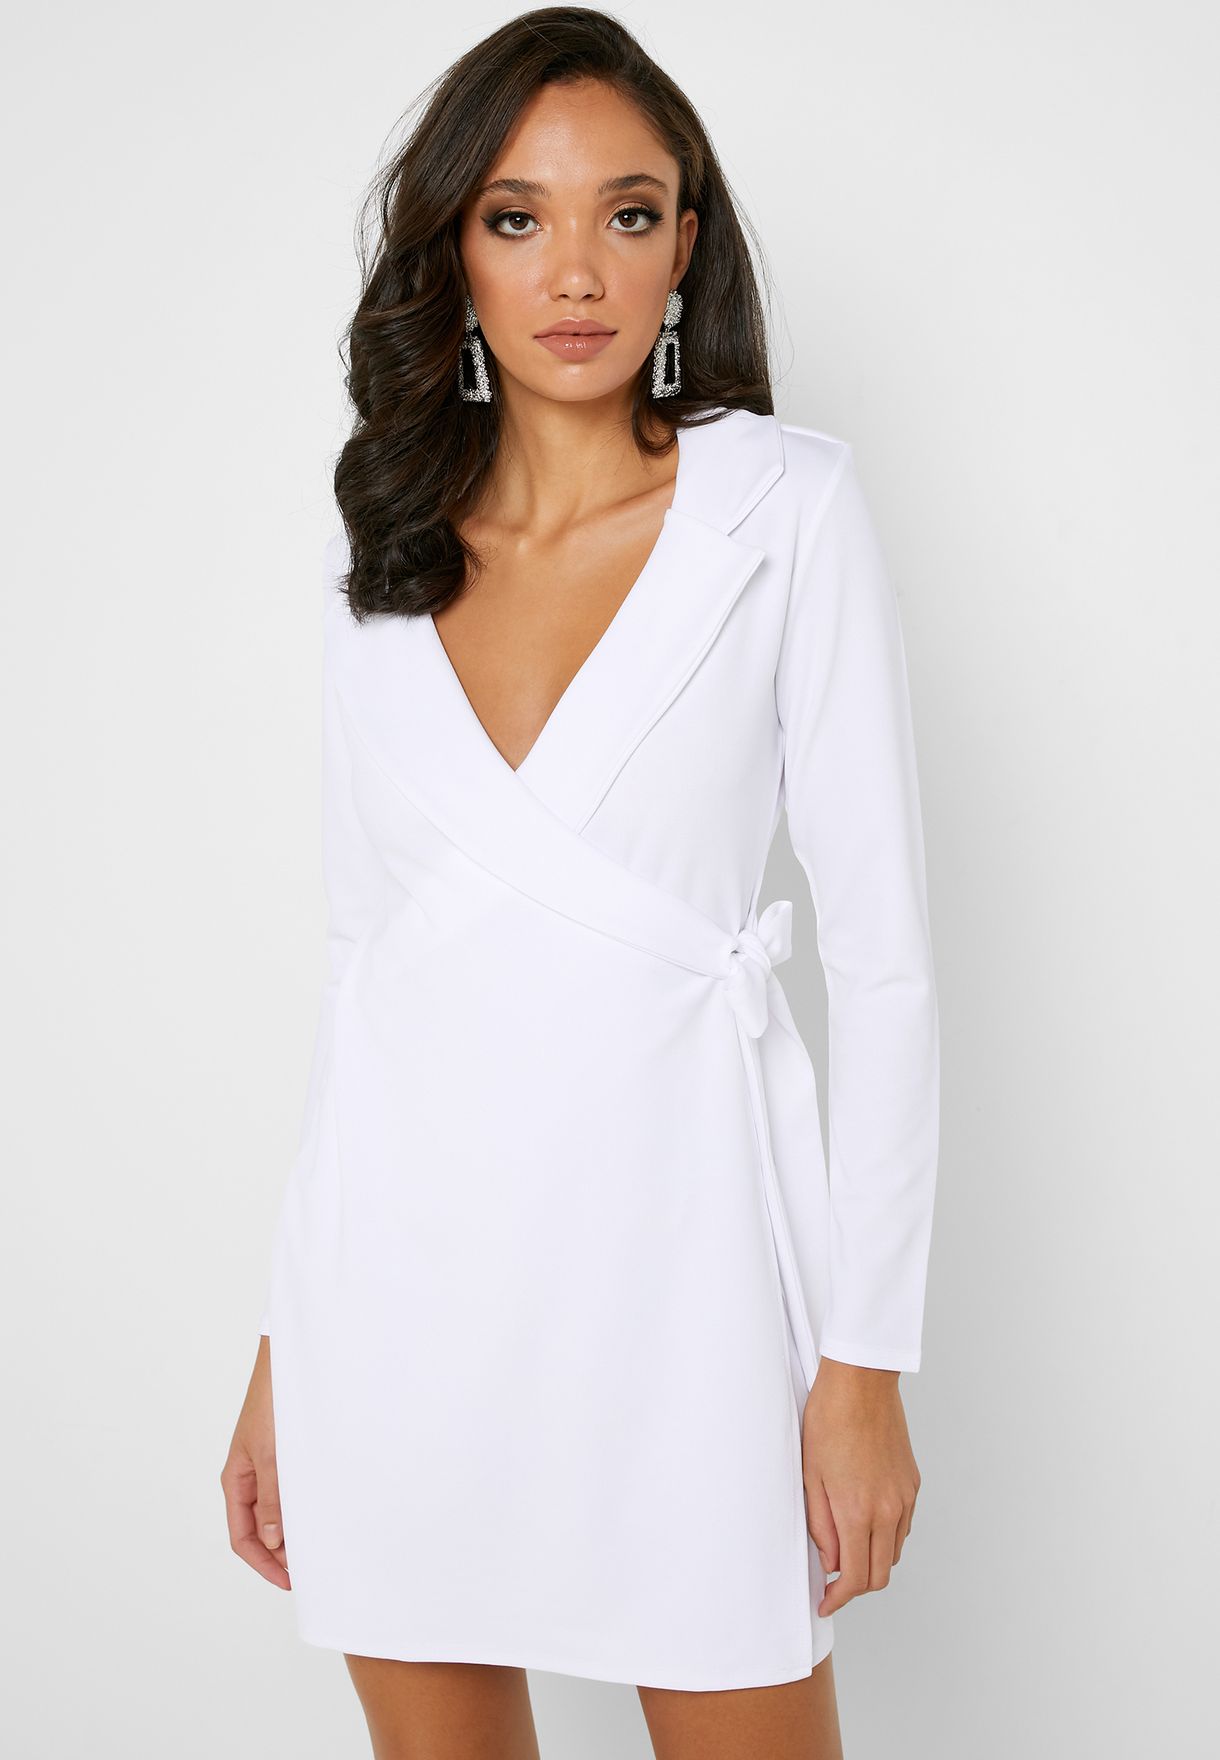 missguided white blazer dress